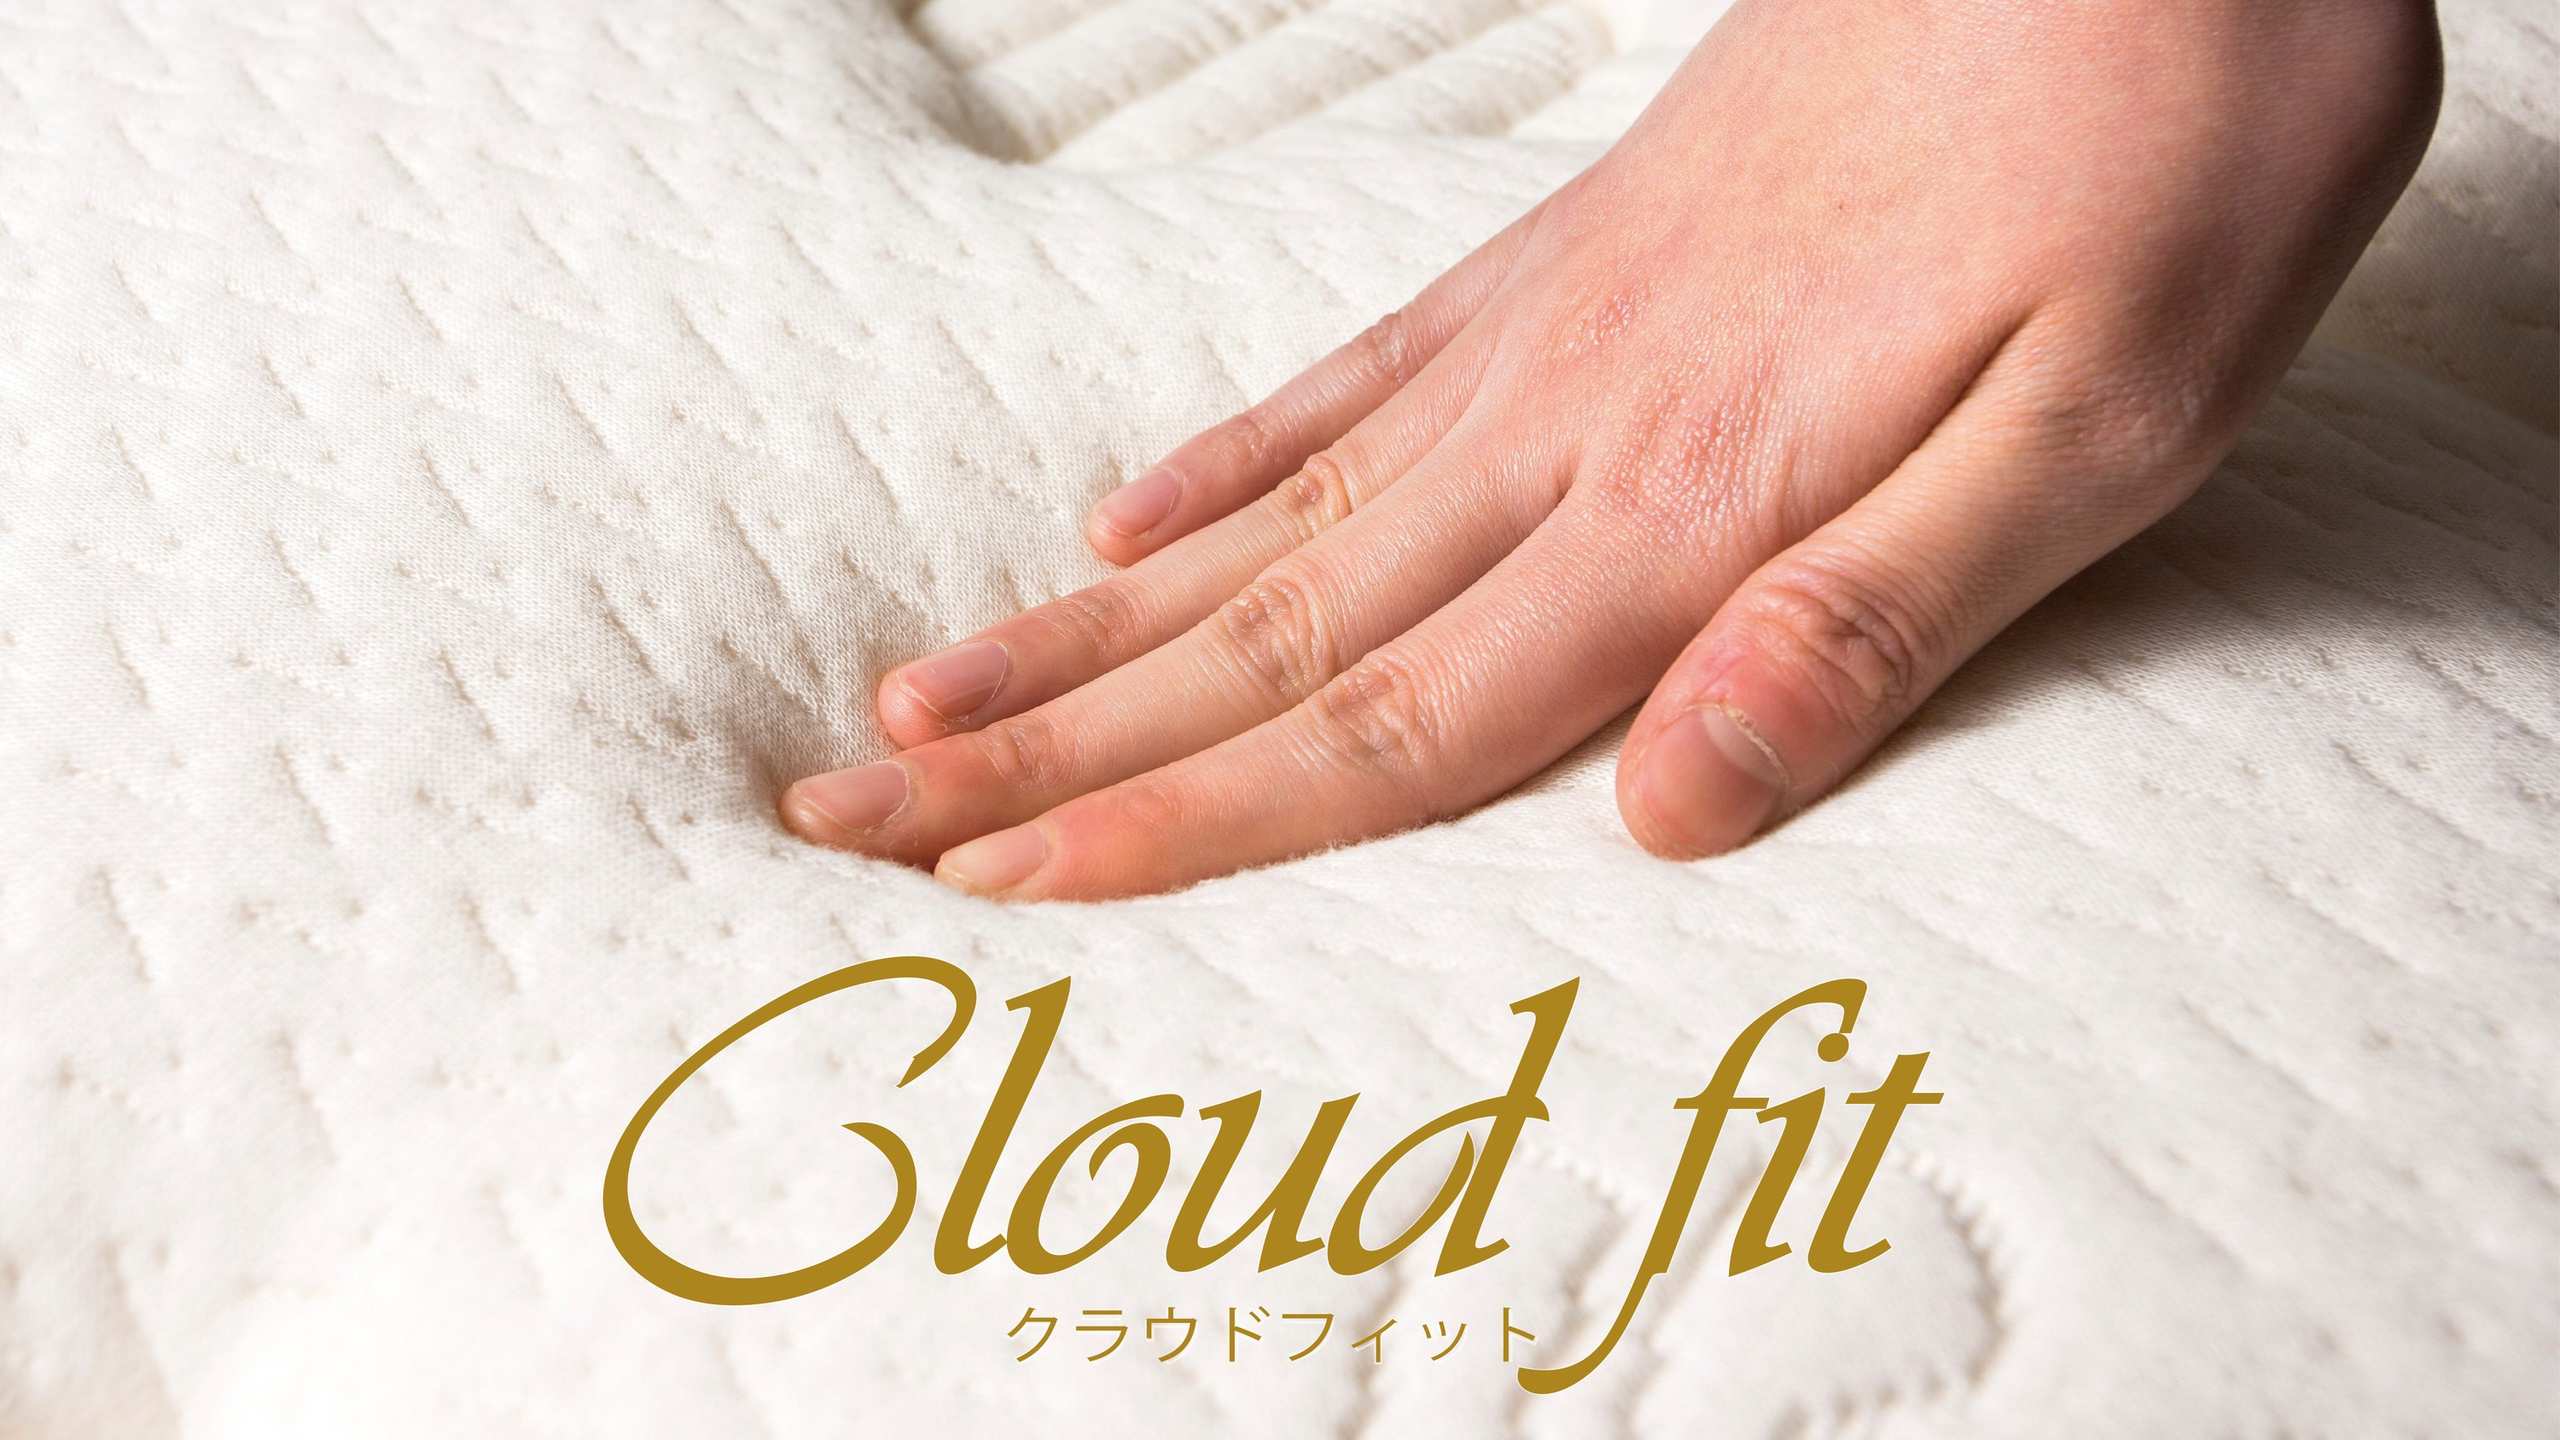 快眠を追求したオリジナルベッド「Cloud fit(クラウドフィット)」